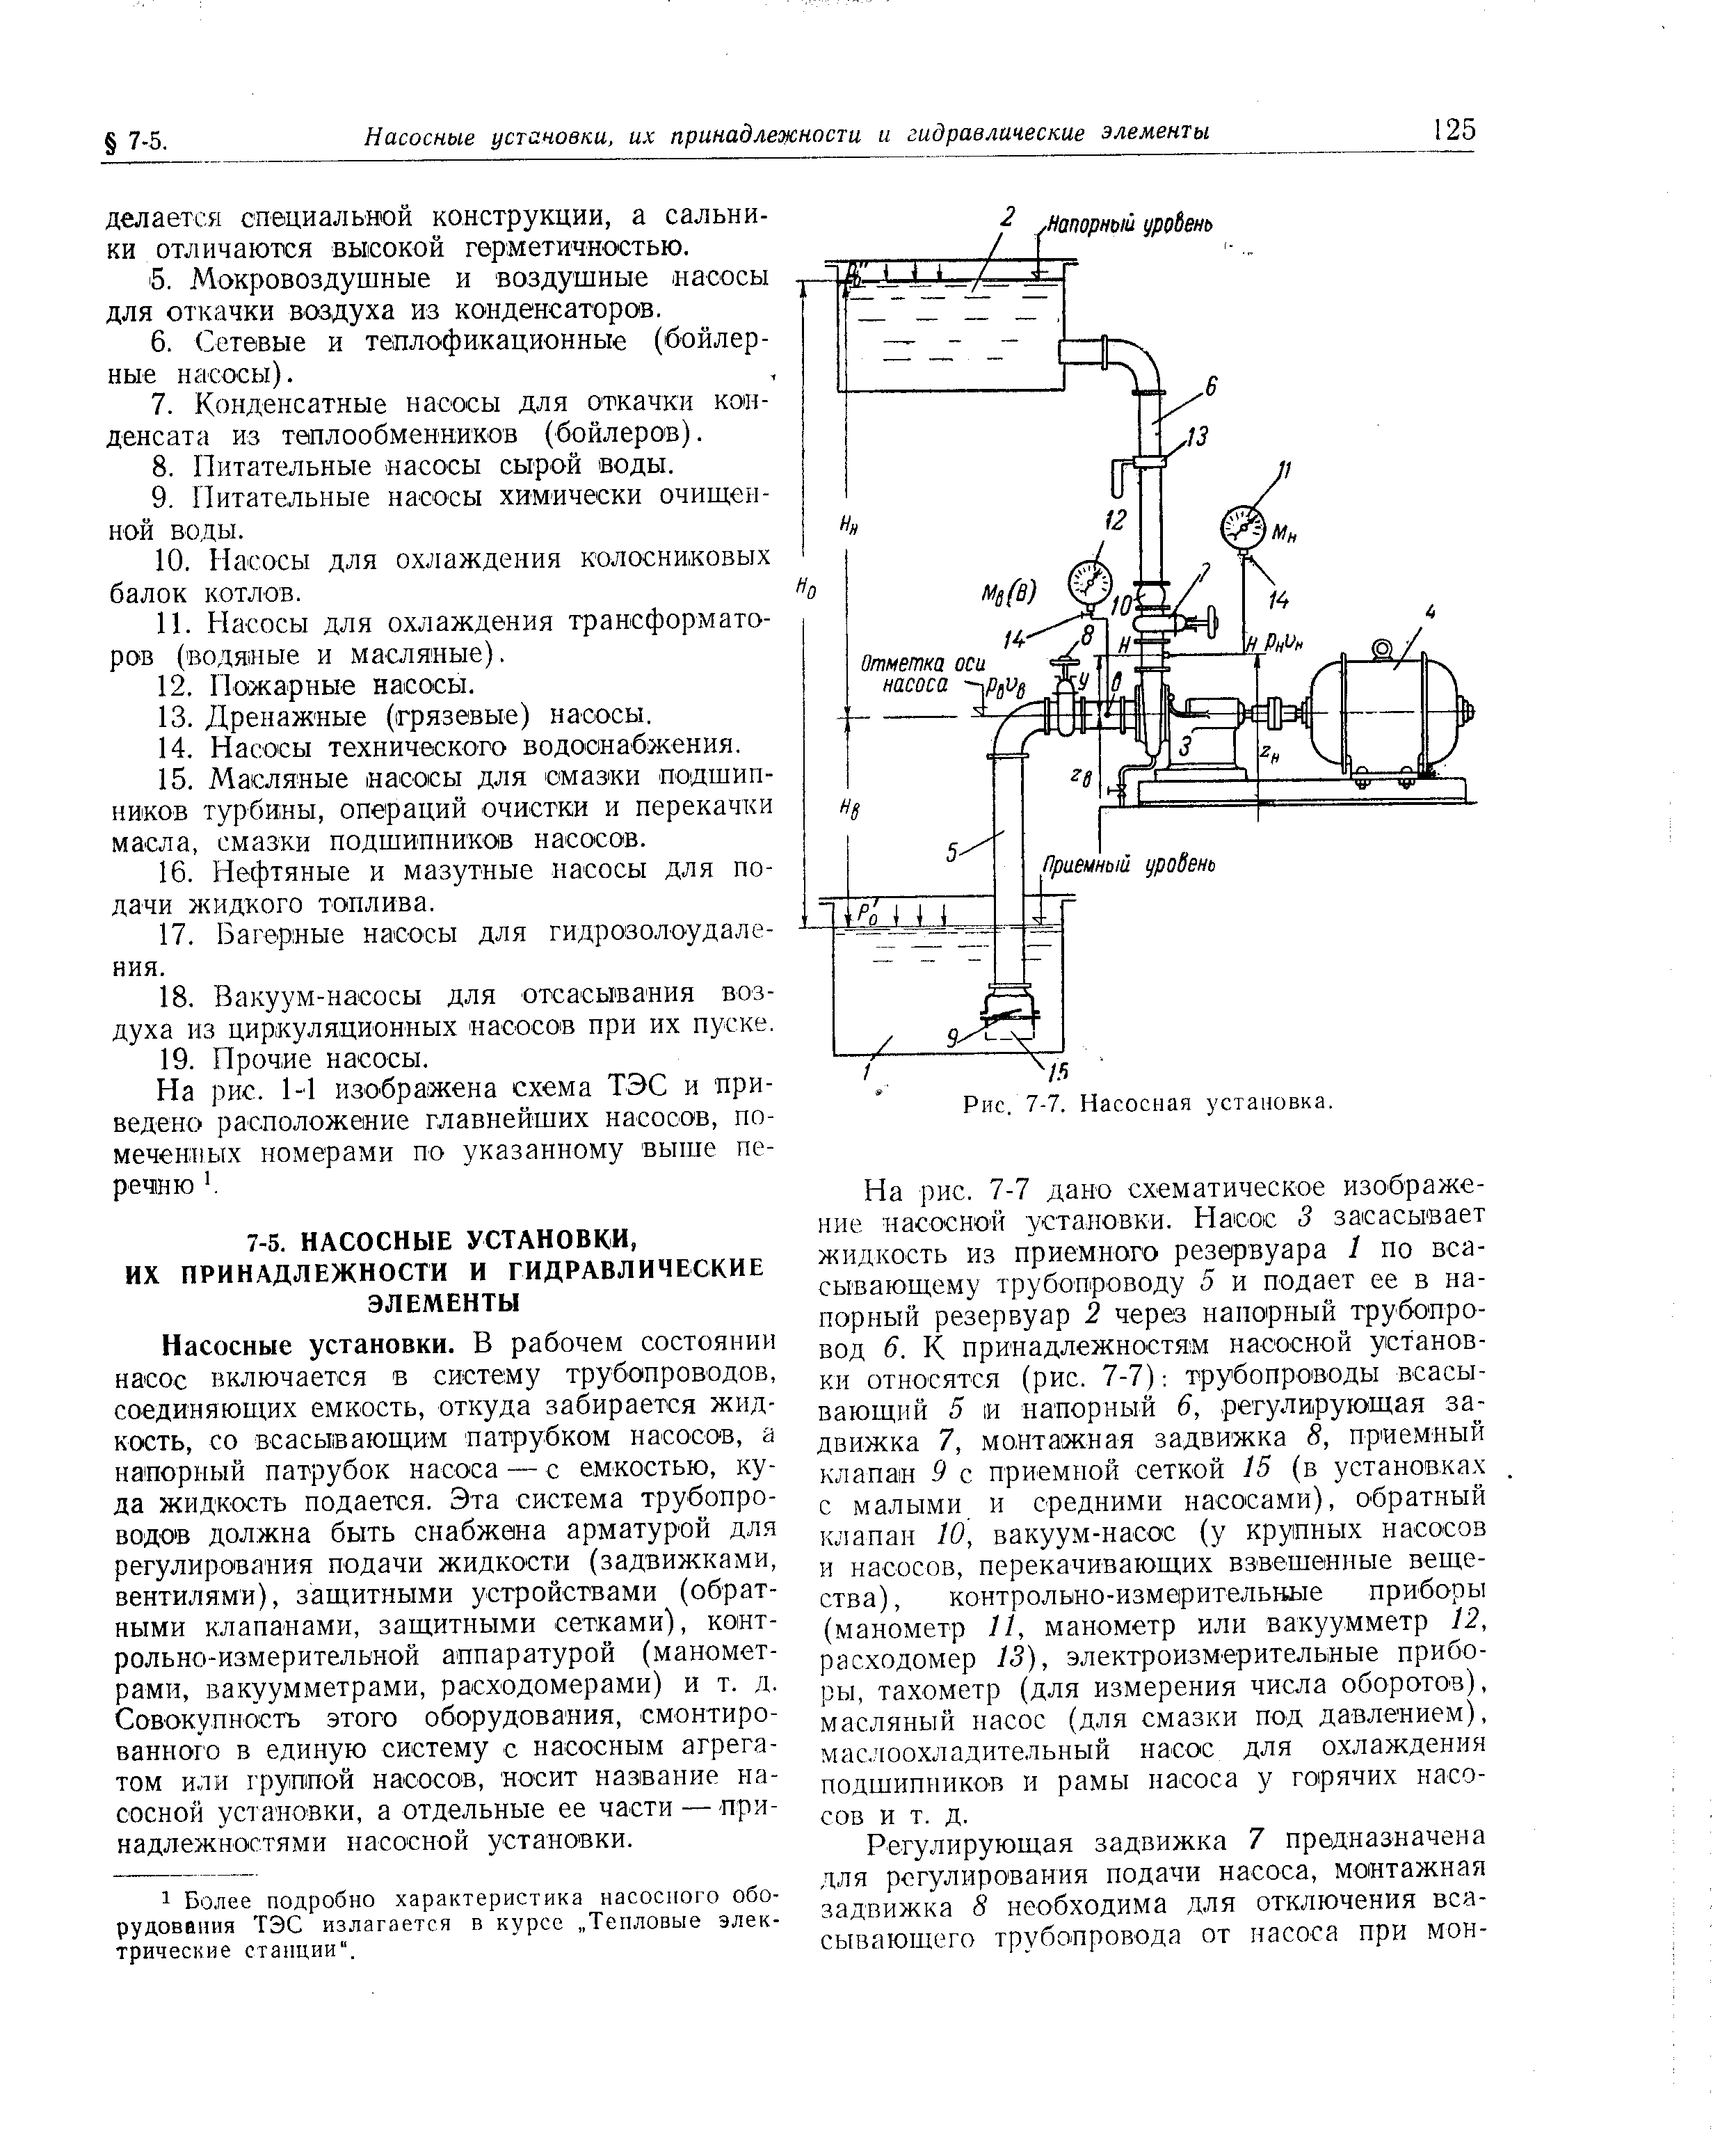 На рис. 1-4 изображена схема ТЭС и приведено расположение главнейших насосов, помеченных номерами по указанному выше пе-реч1ню .